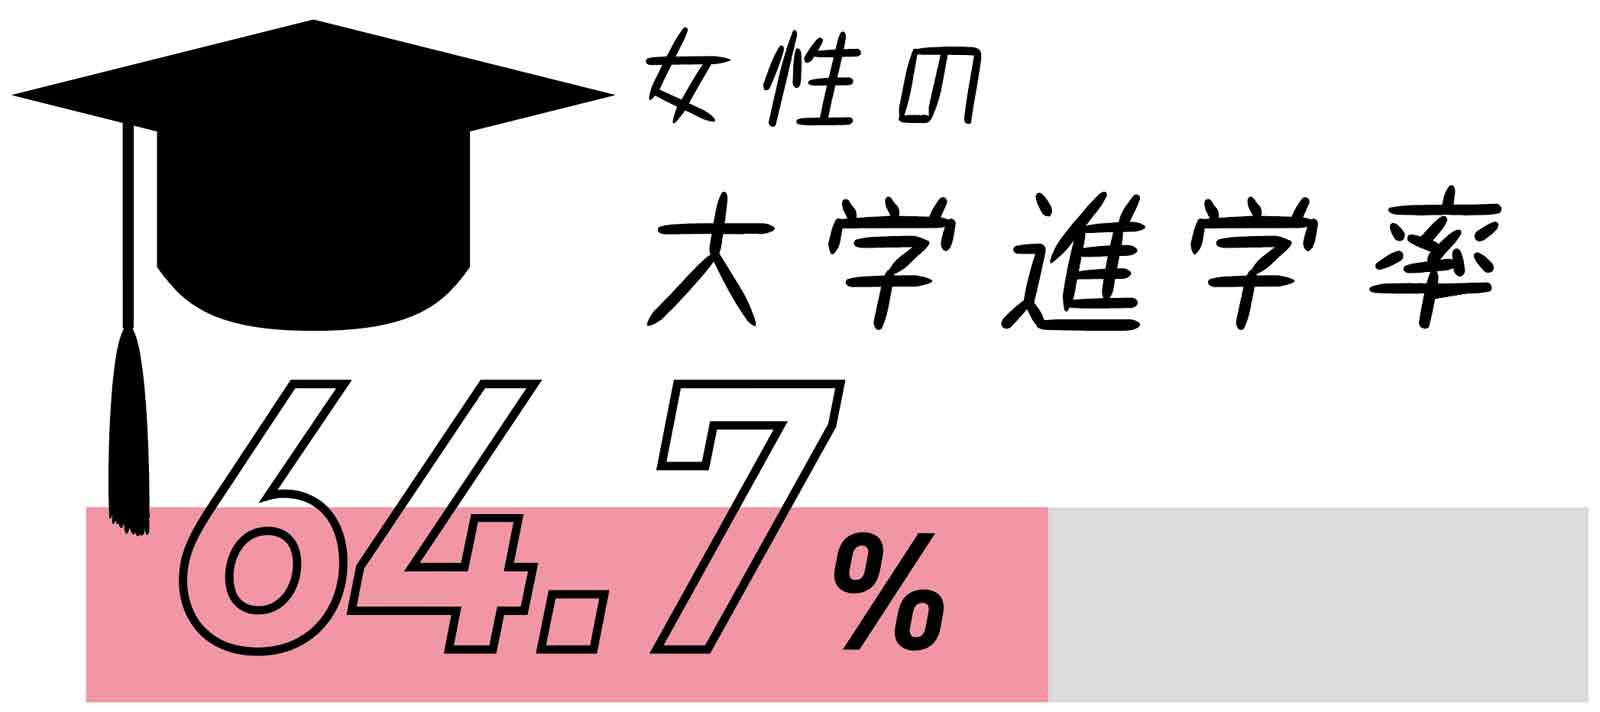 女性の大学進学率64.7%